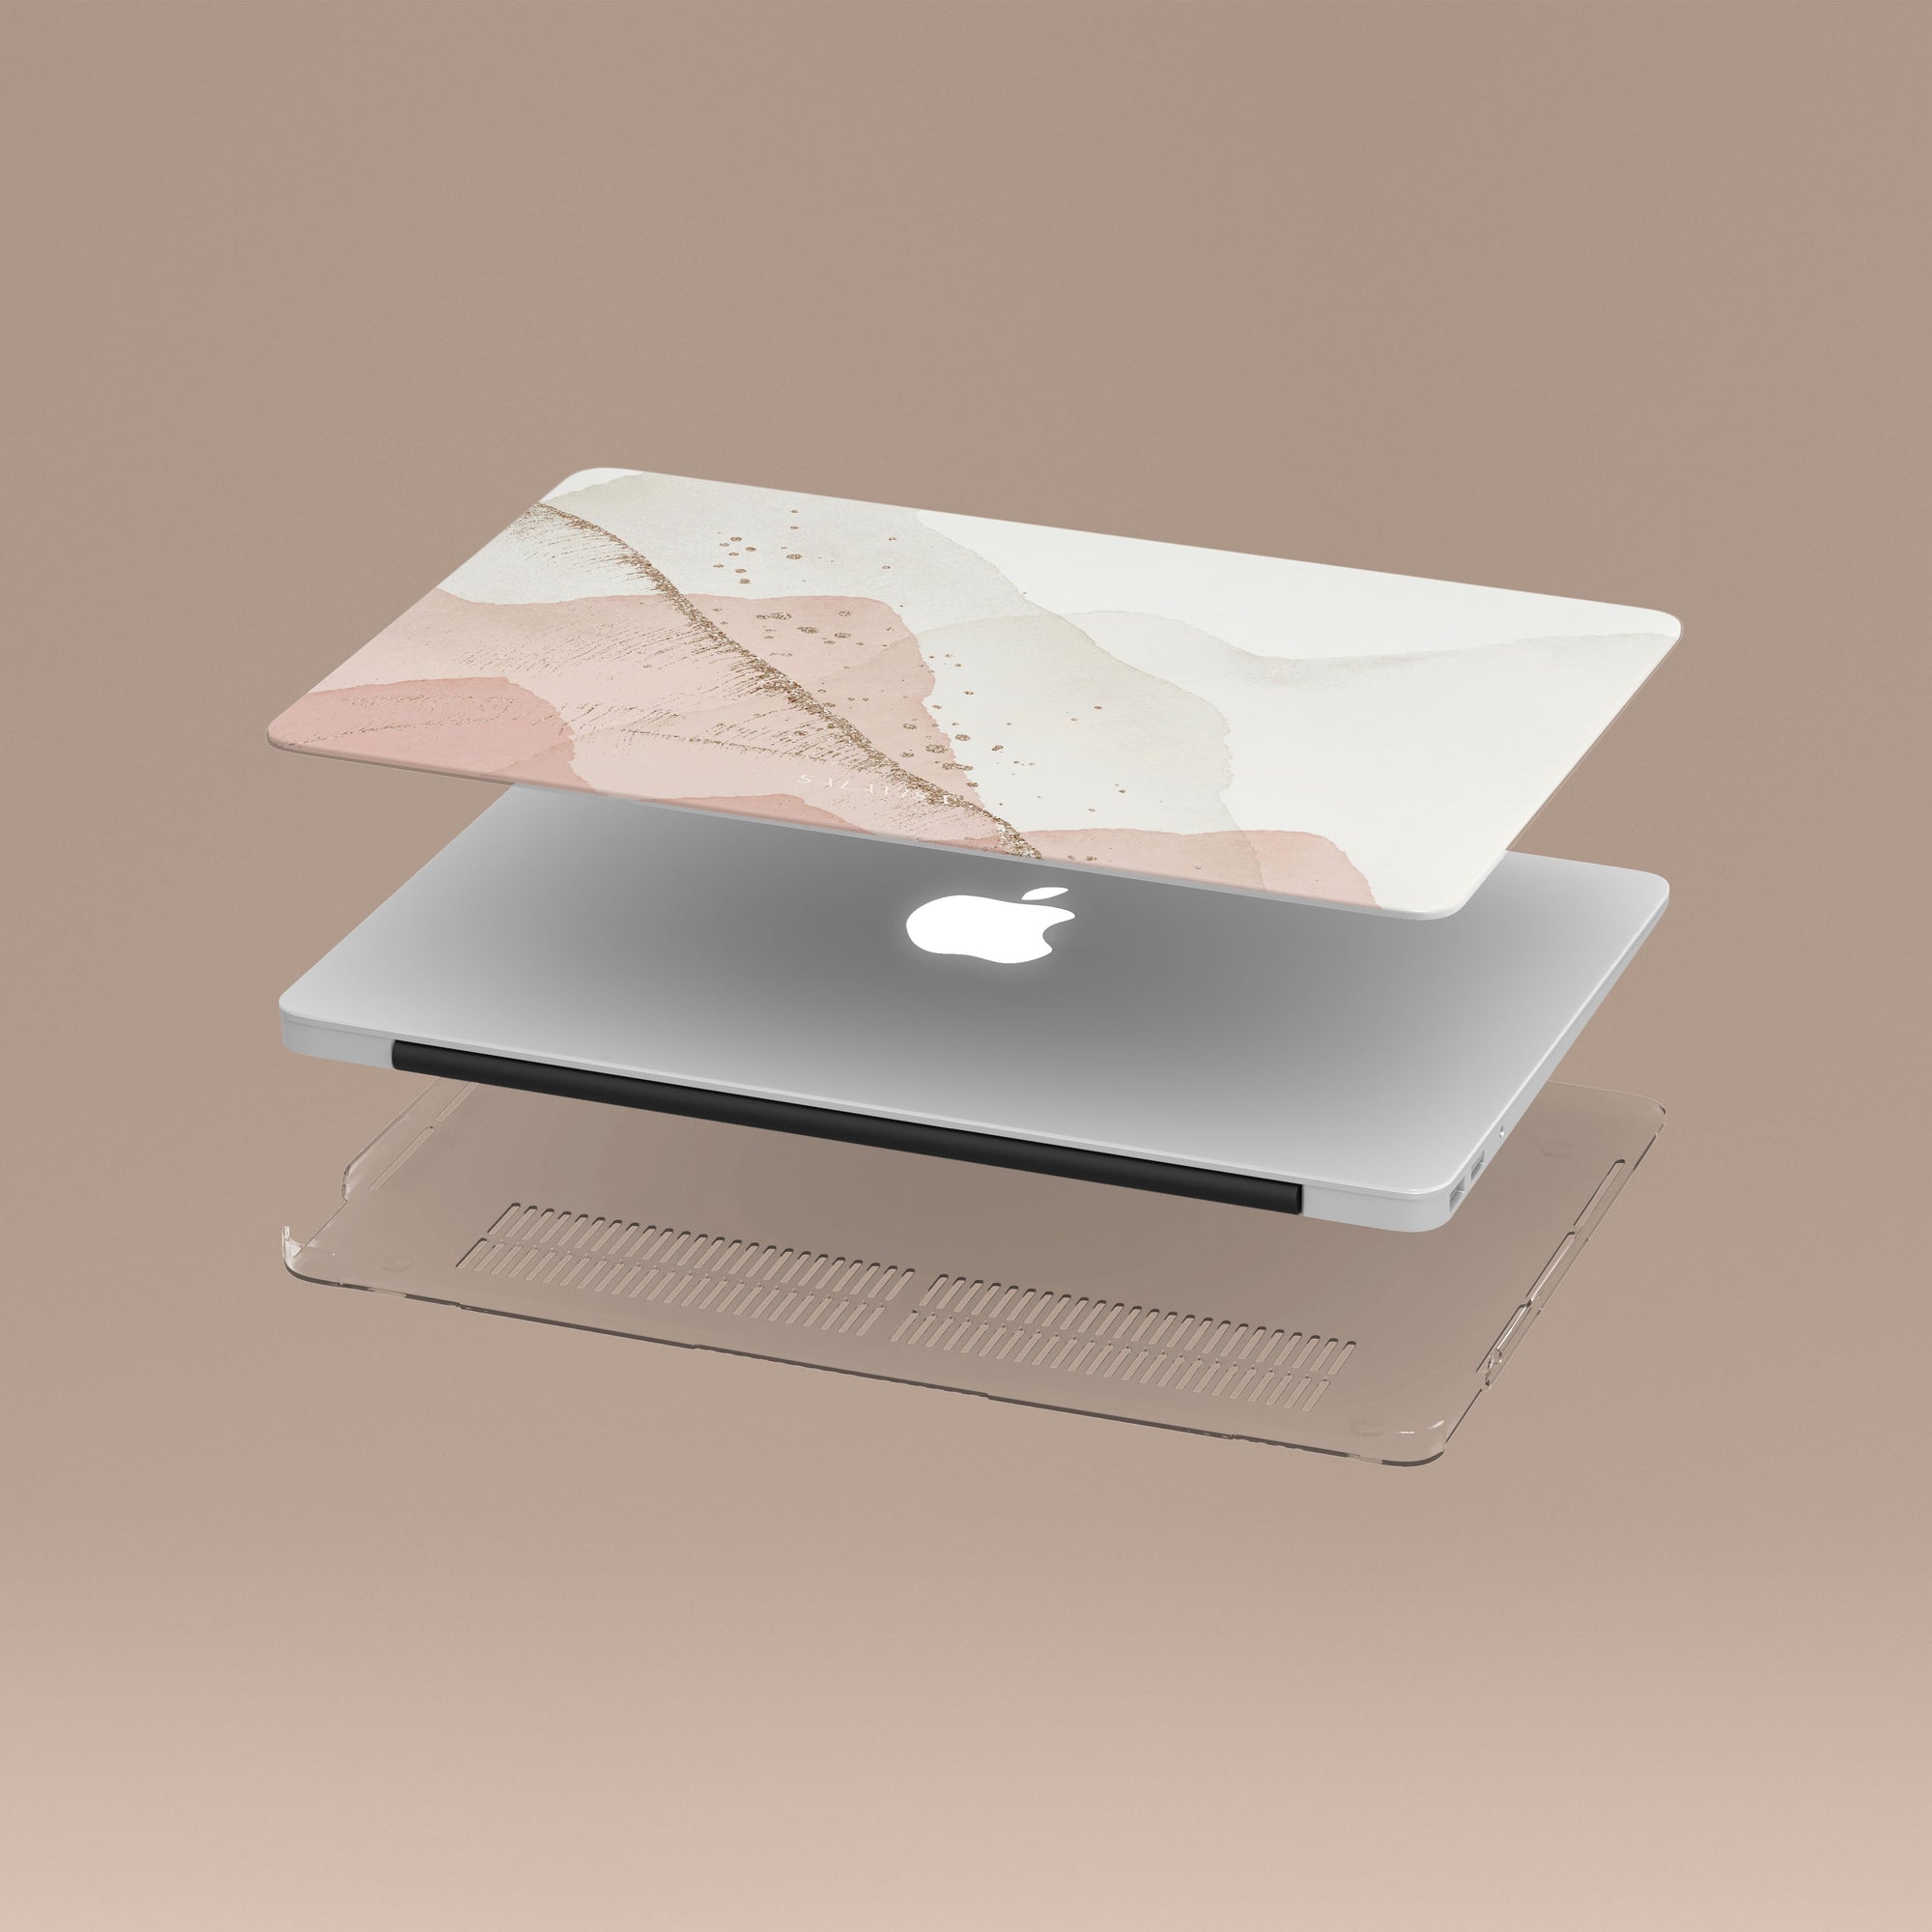 Pink & Gold Abstract MacBook Case MacBook Cases - SALAVISA